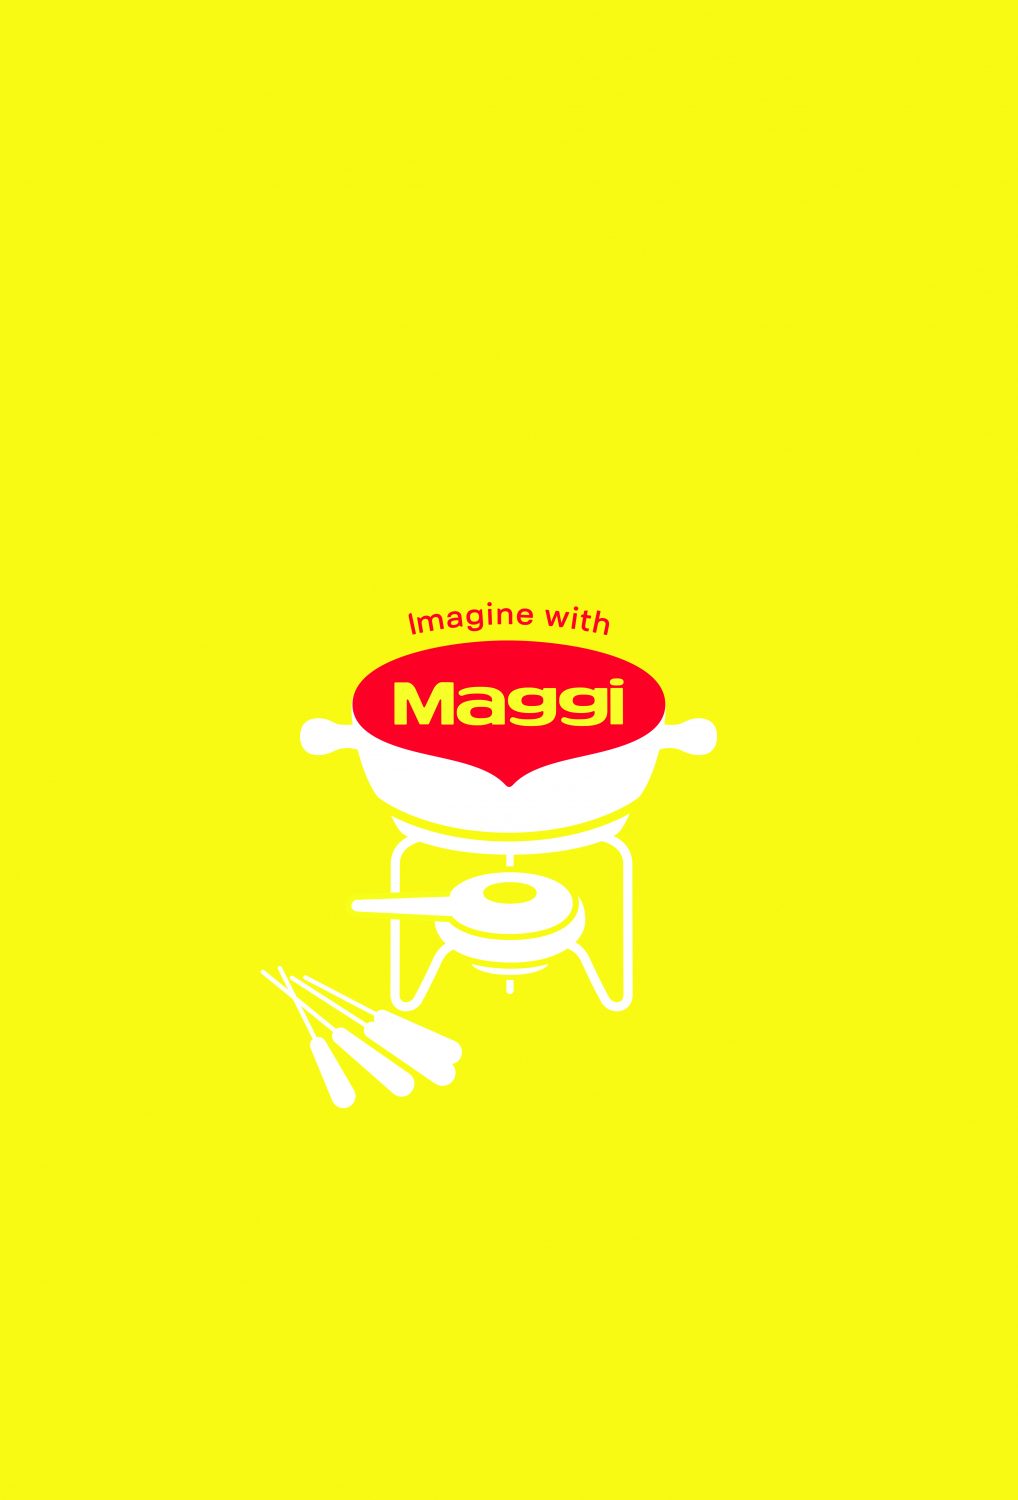 2021-Nestle Maggi-Imagine With Maggi-Poster 03-Publicis Brazil–jpg